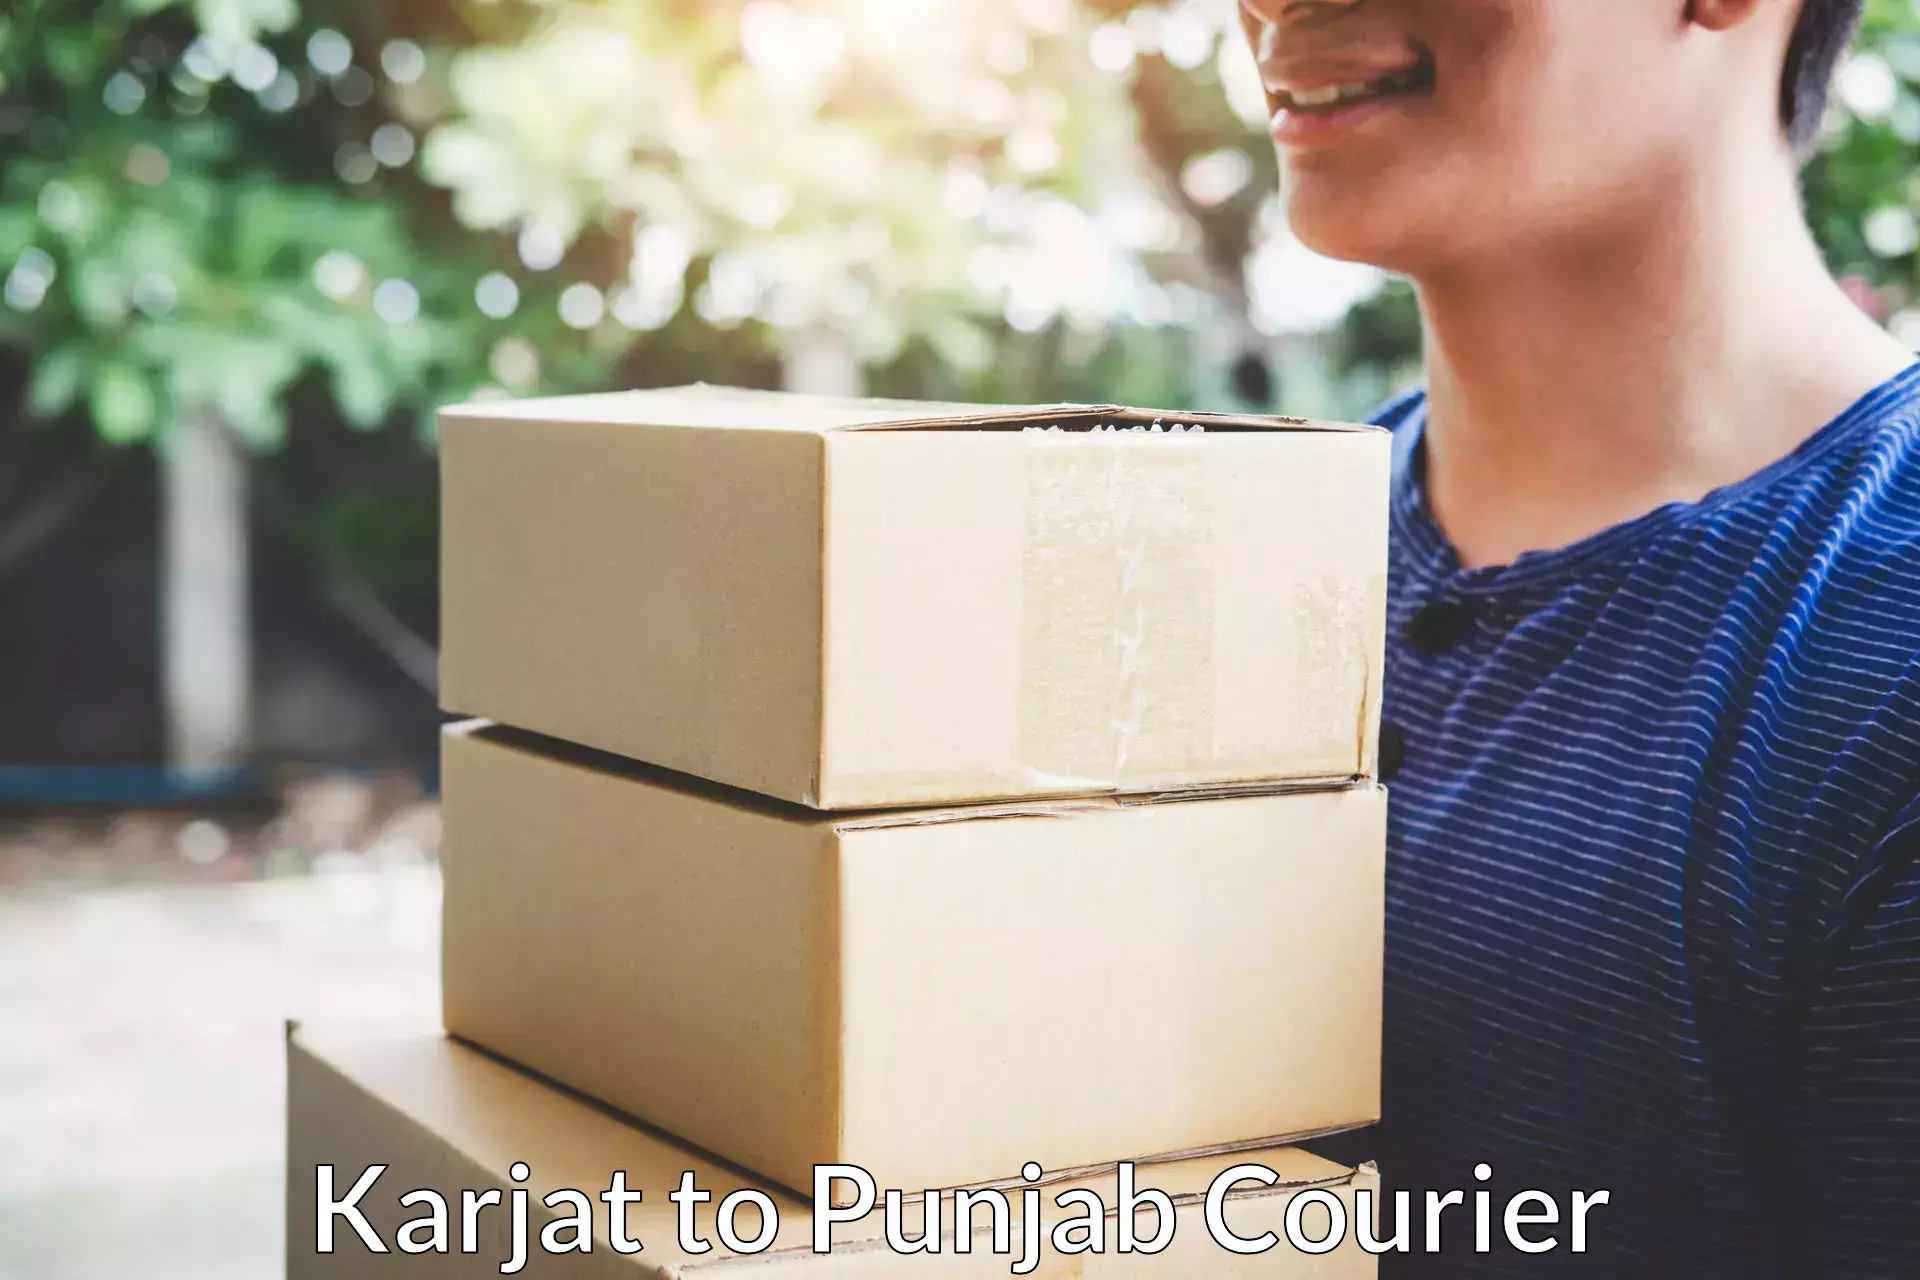 Personalized moving plans Karjat to Punjab